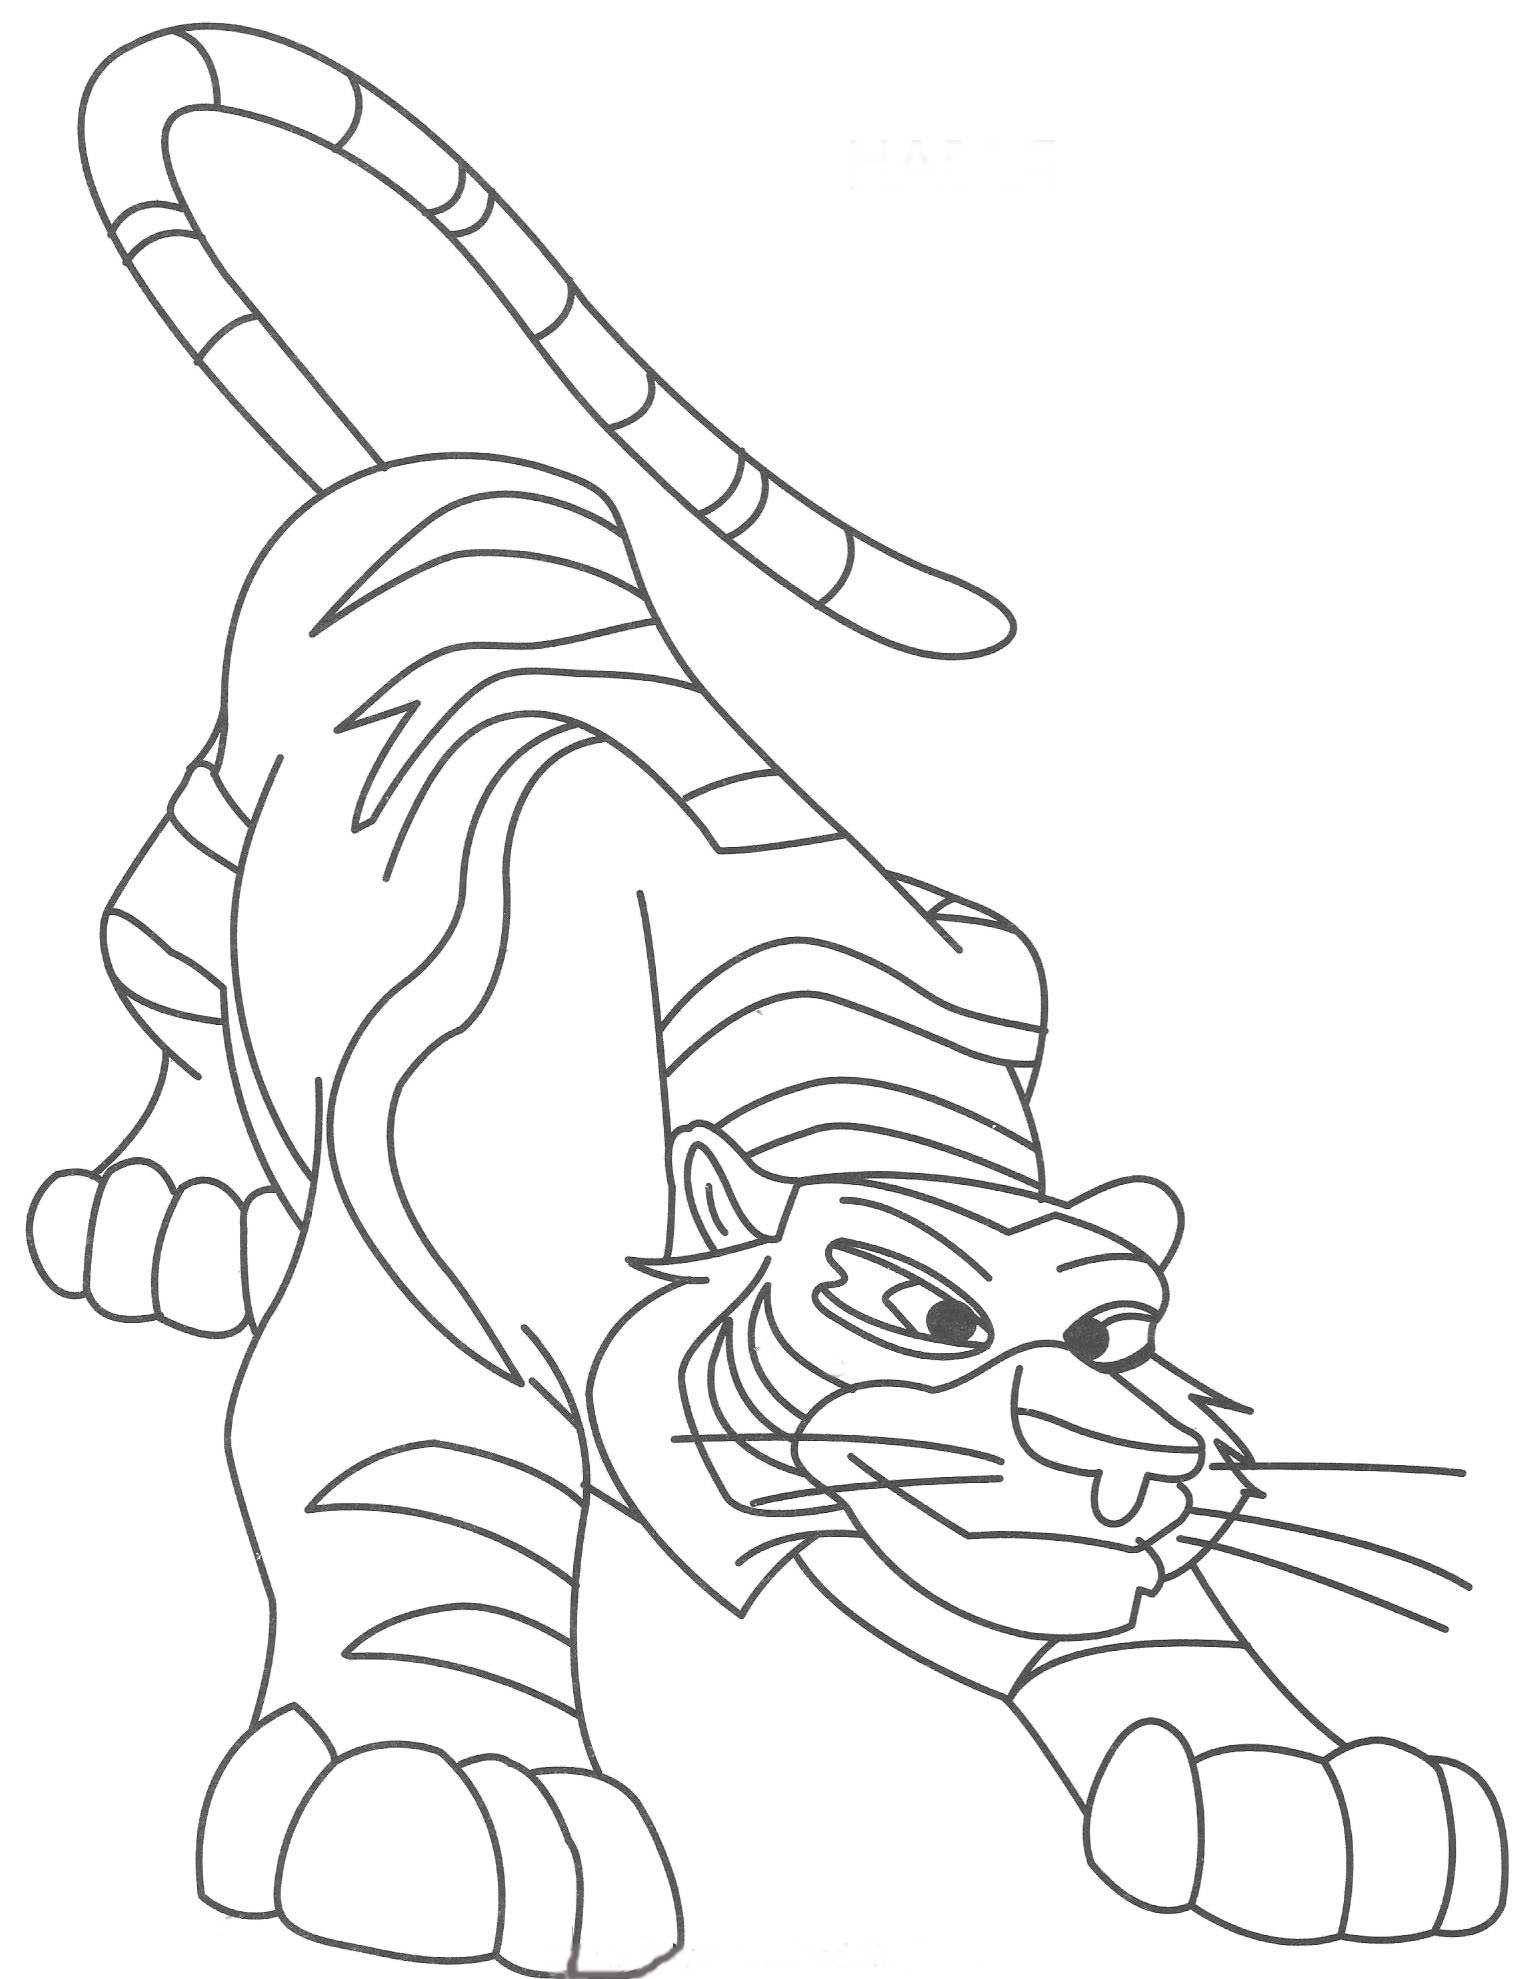 Раскраска тиг. Лео и тигр раскраска. Тигр и Лео раскраска для детей. Тигр раскраска для детей. Раскраски для детей Део и Тиг.